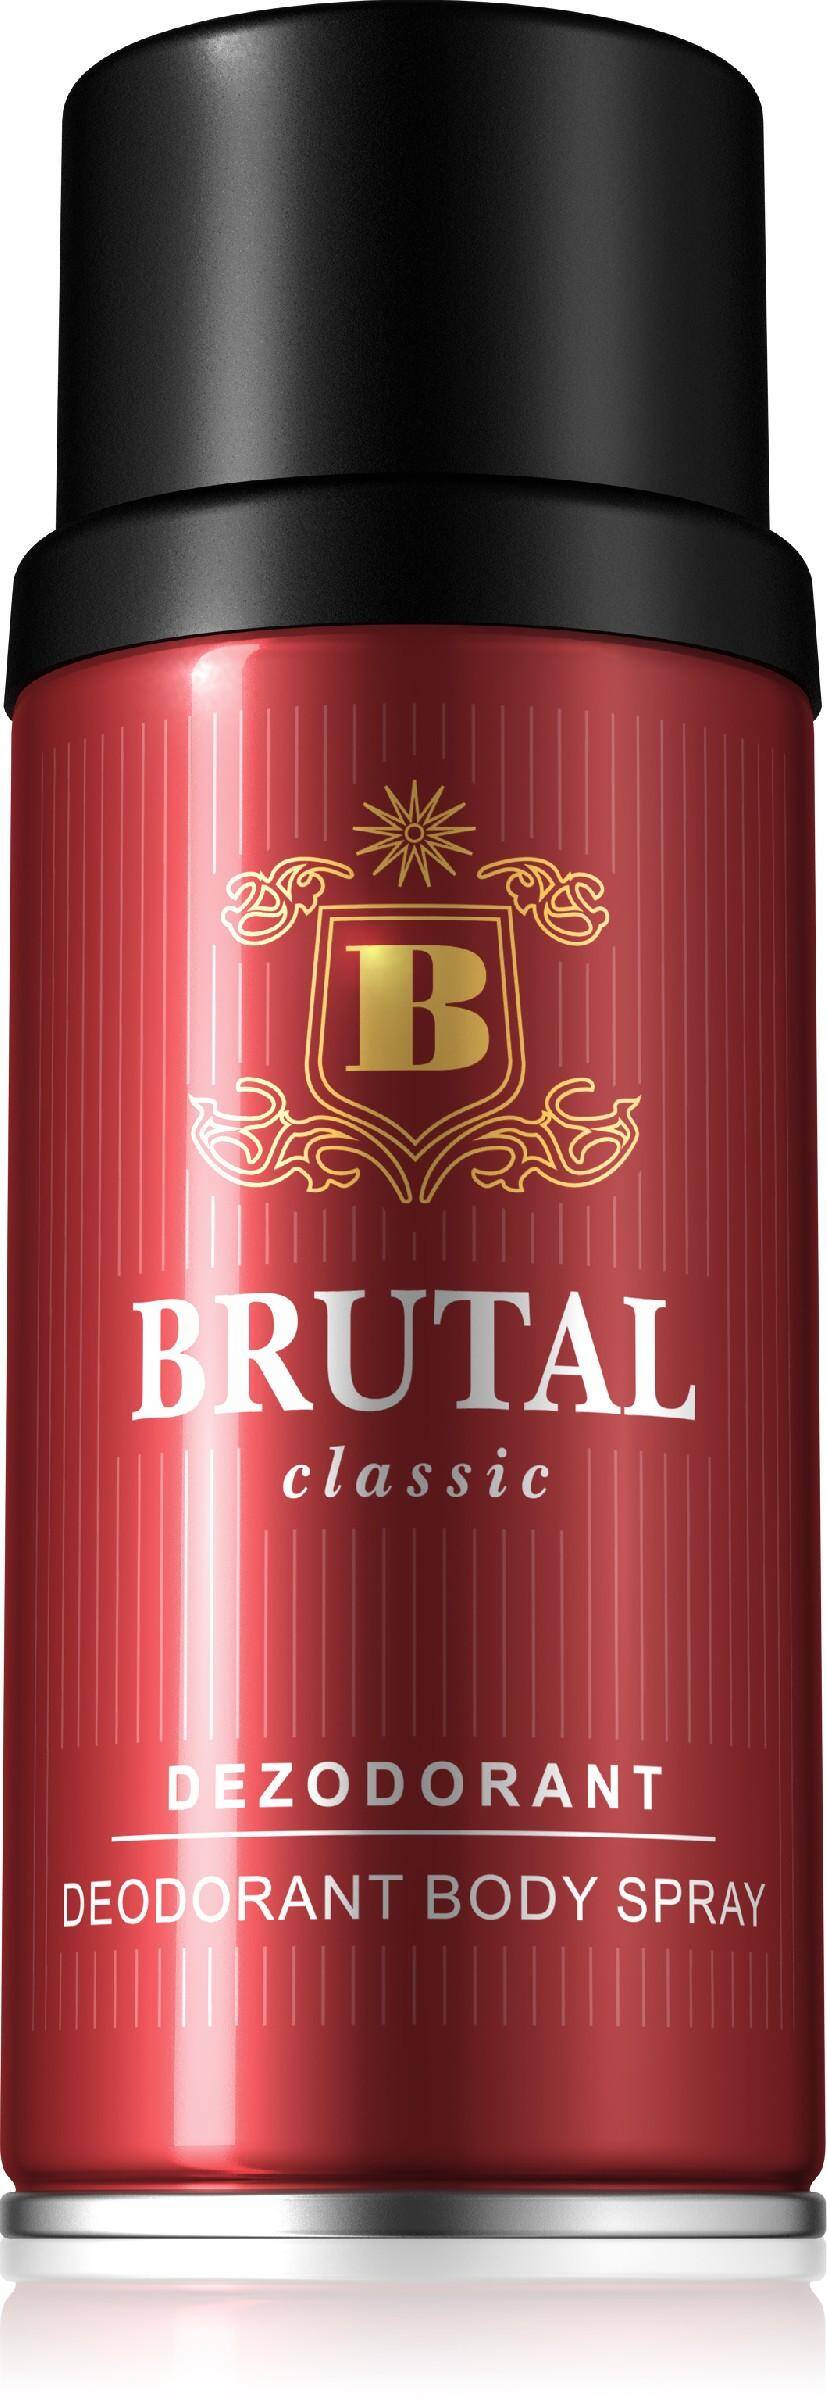 Brutal Classic dezodorant 150ml (Zdjęcie 1)